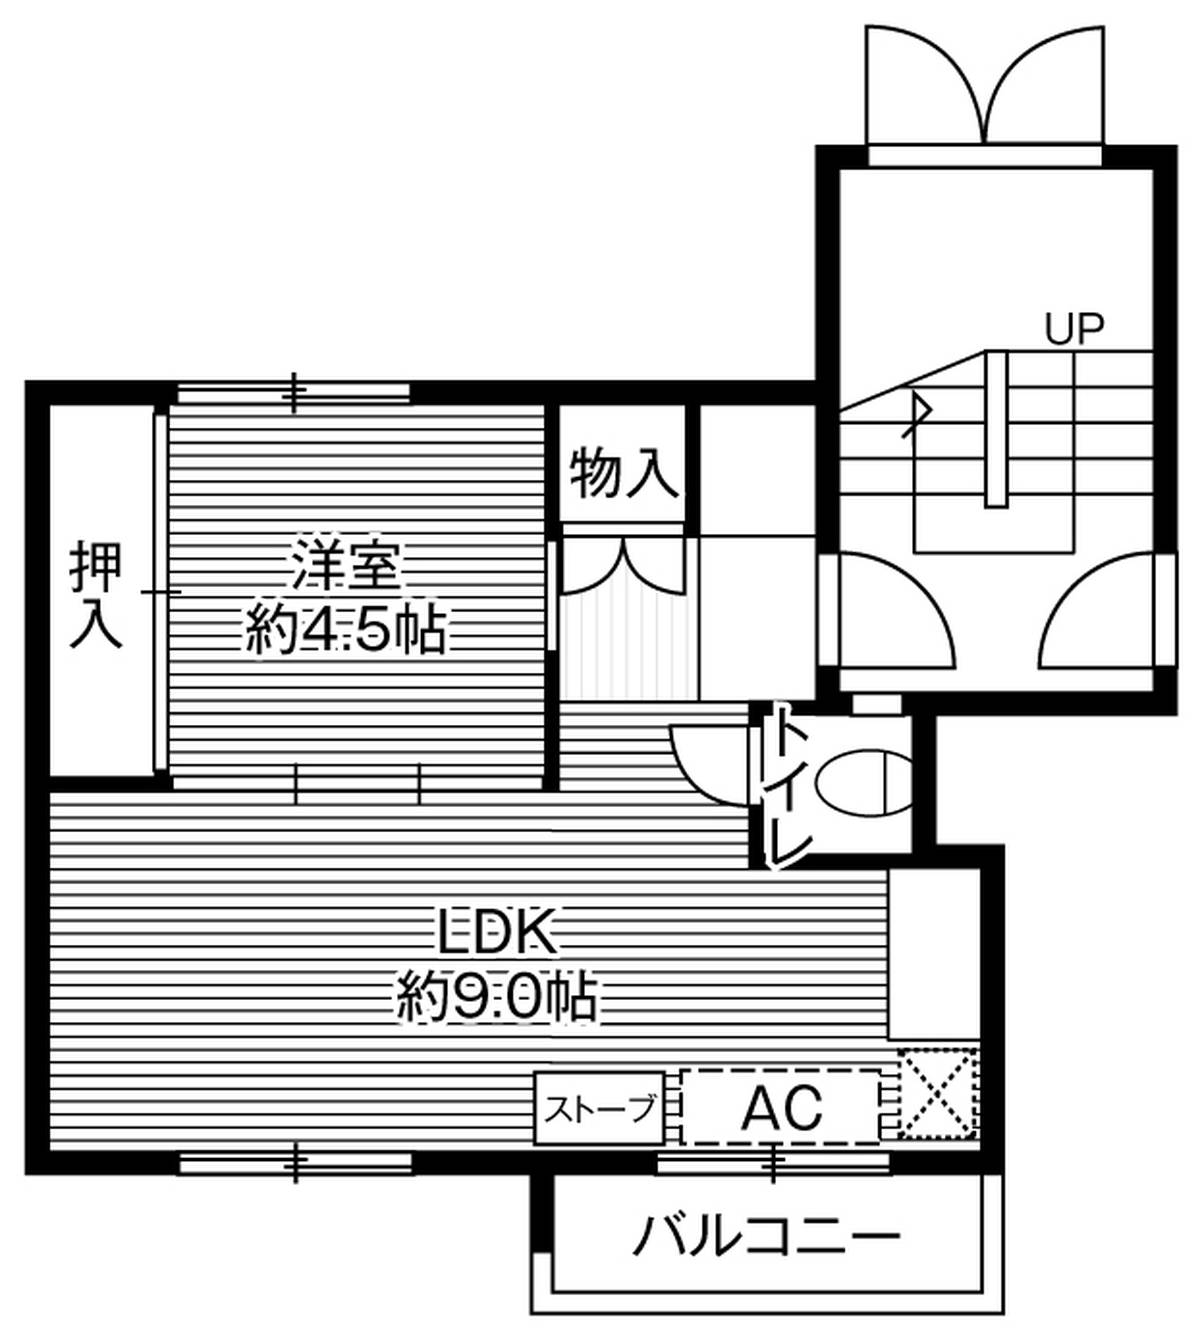 Sơ đồ phòng 1LDK của Village House Zenibako ở Otaru-shi